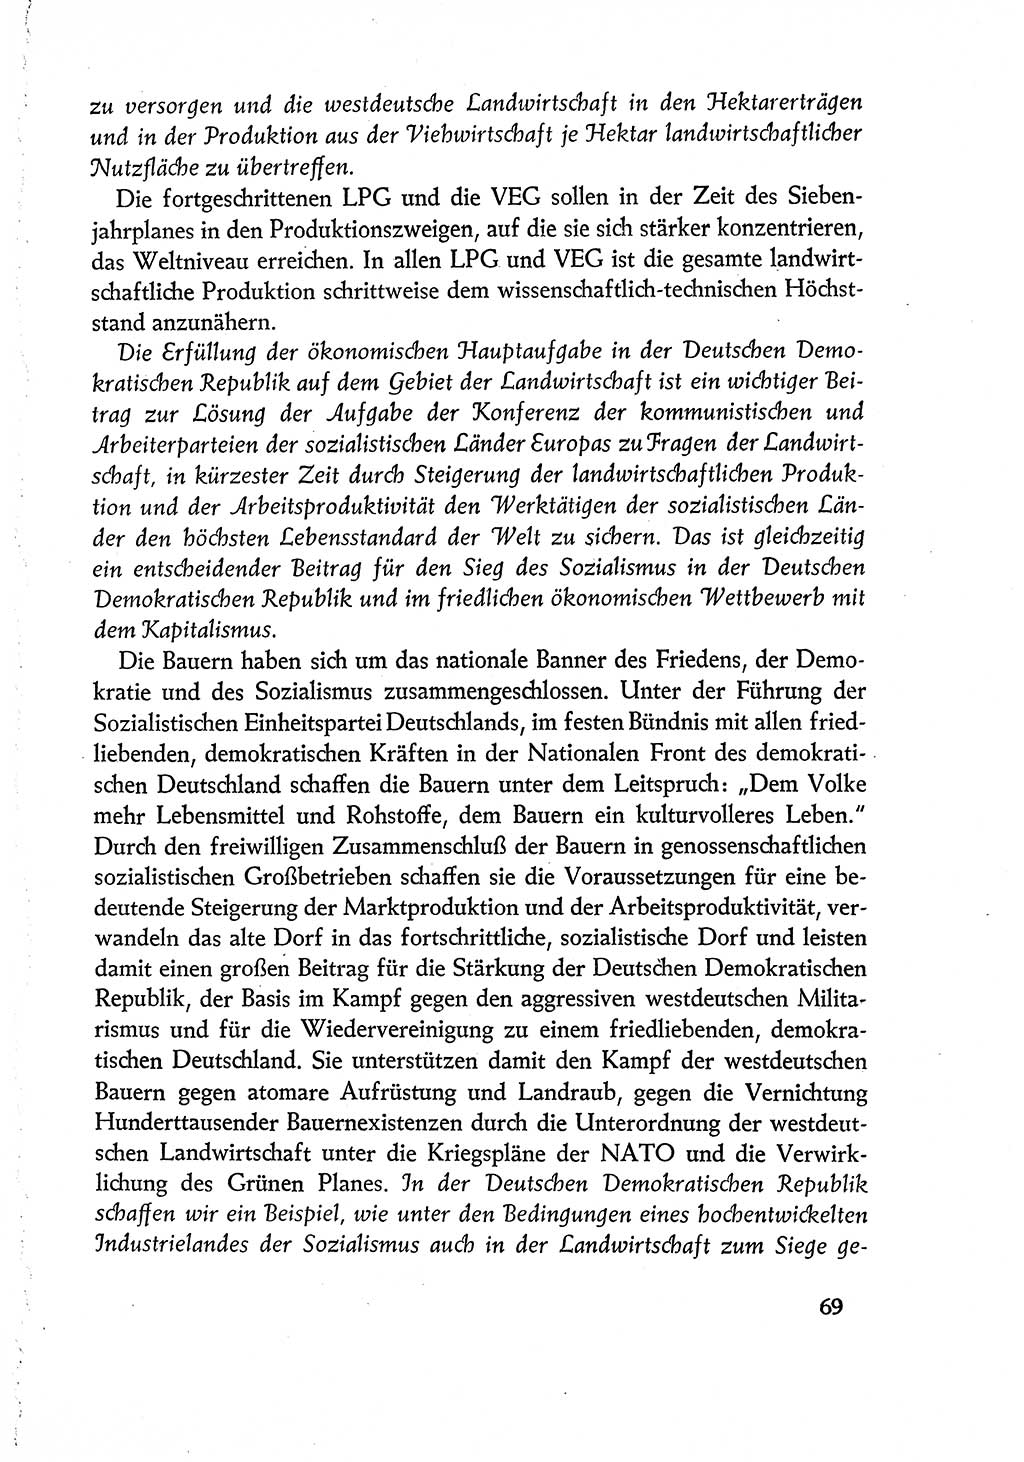 Dokumente der Sozialistischen Einheitspartei Deutschlands (SED) [Deutsche Demokratische Republik (DDR)] 1960-1961, Seite 69 (Dok. SED DDR 1960-1961, S. 69)